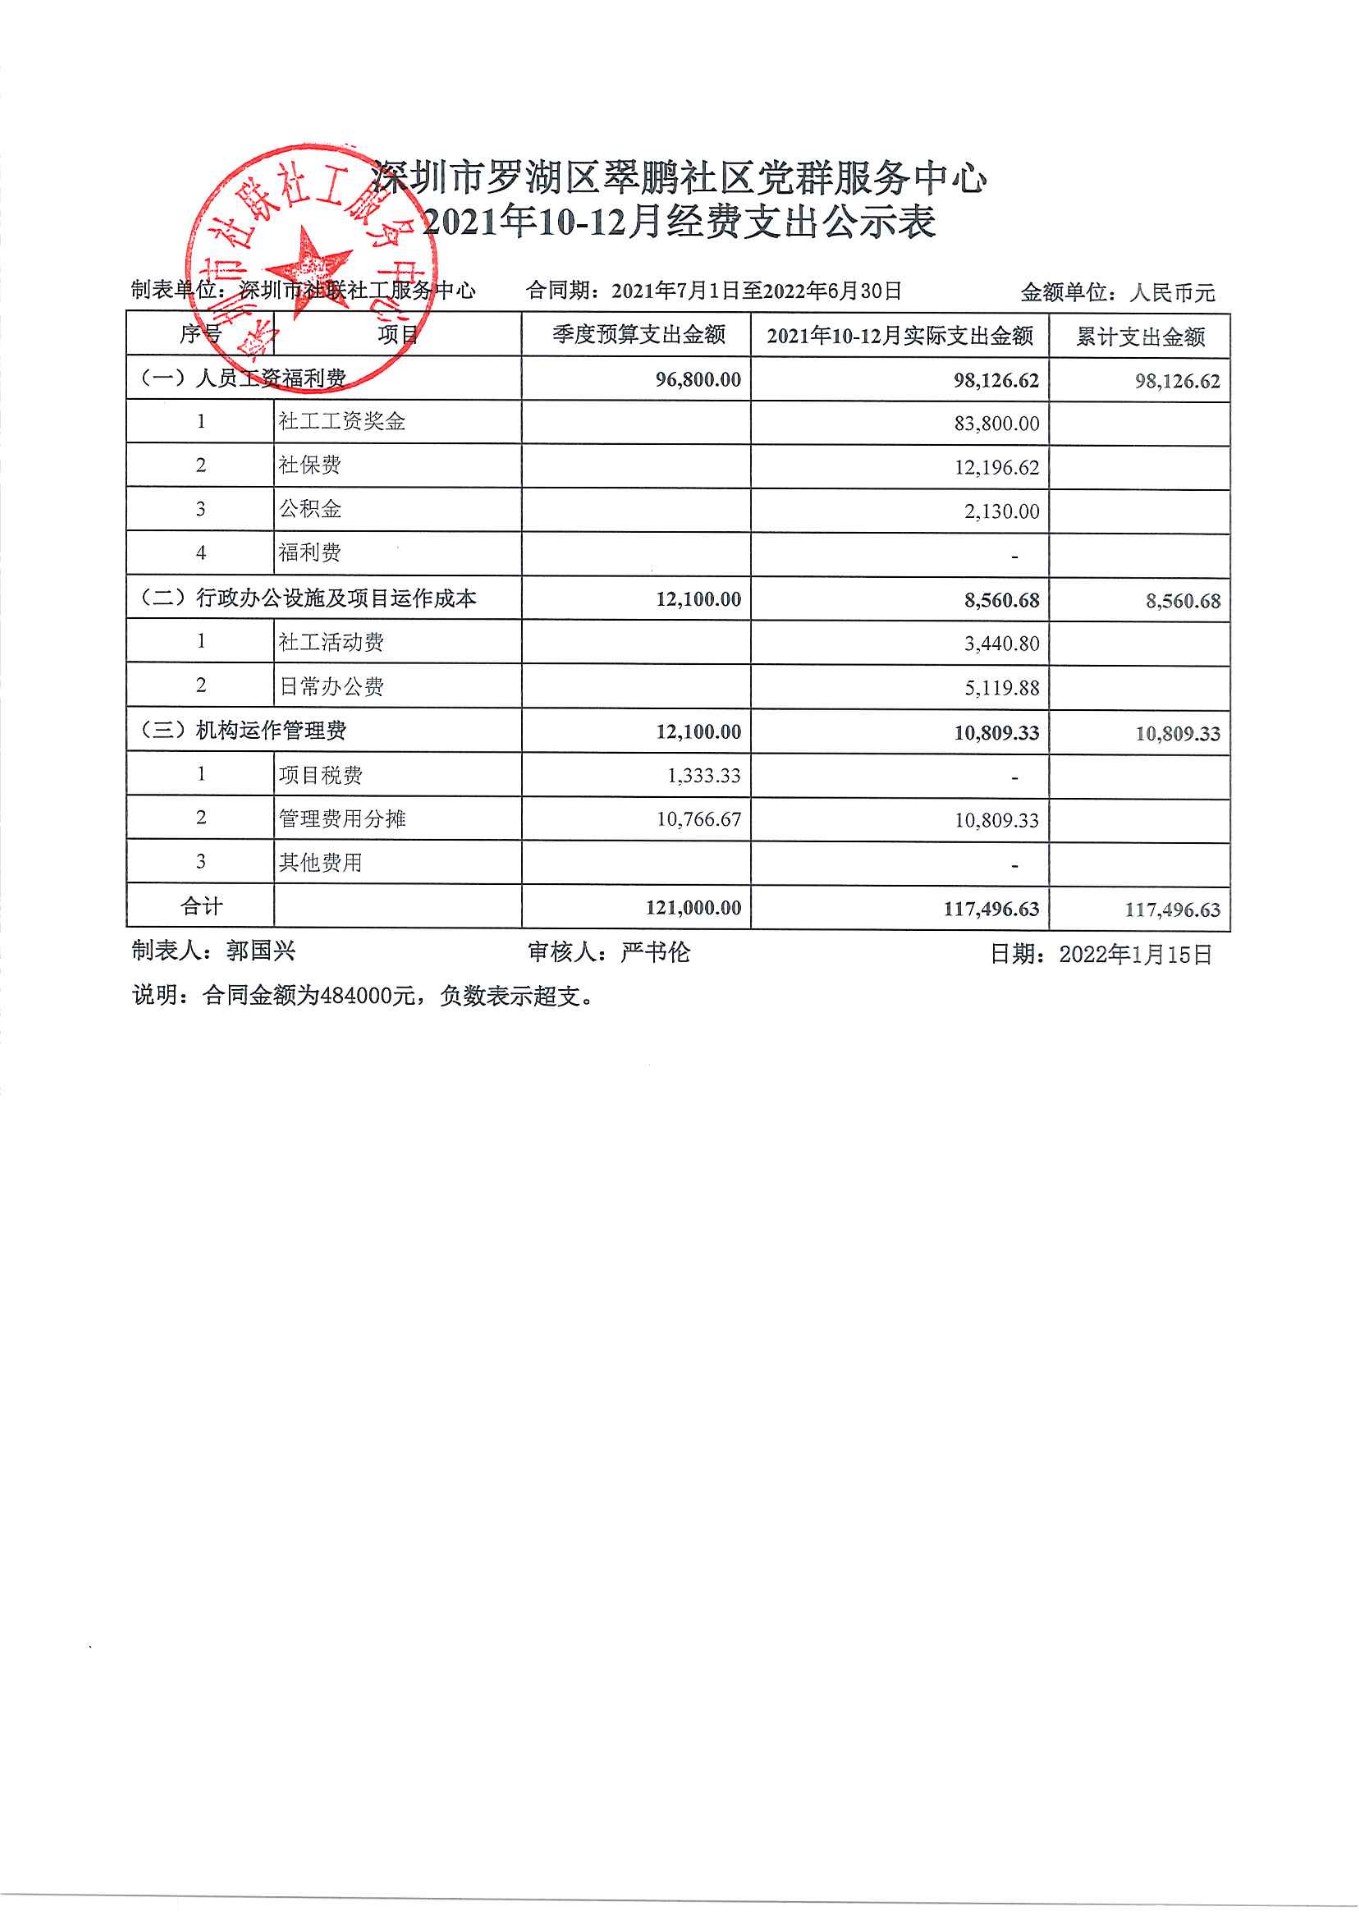 翠鹏社区2021年10-12月财务公示表